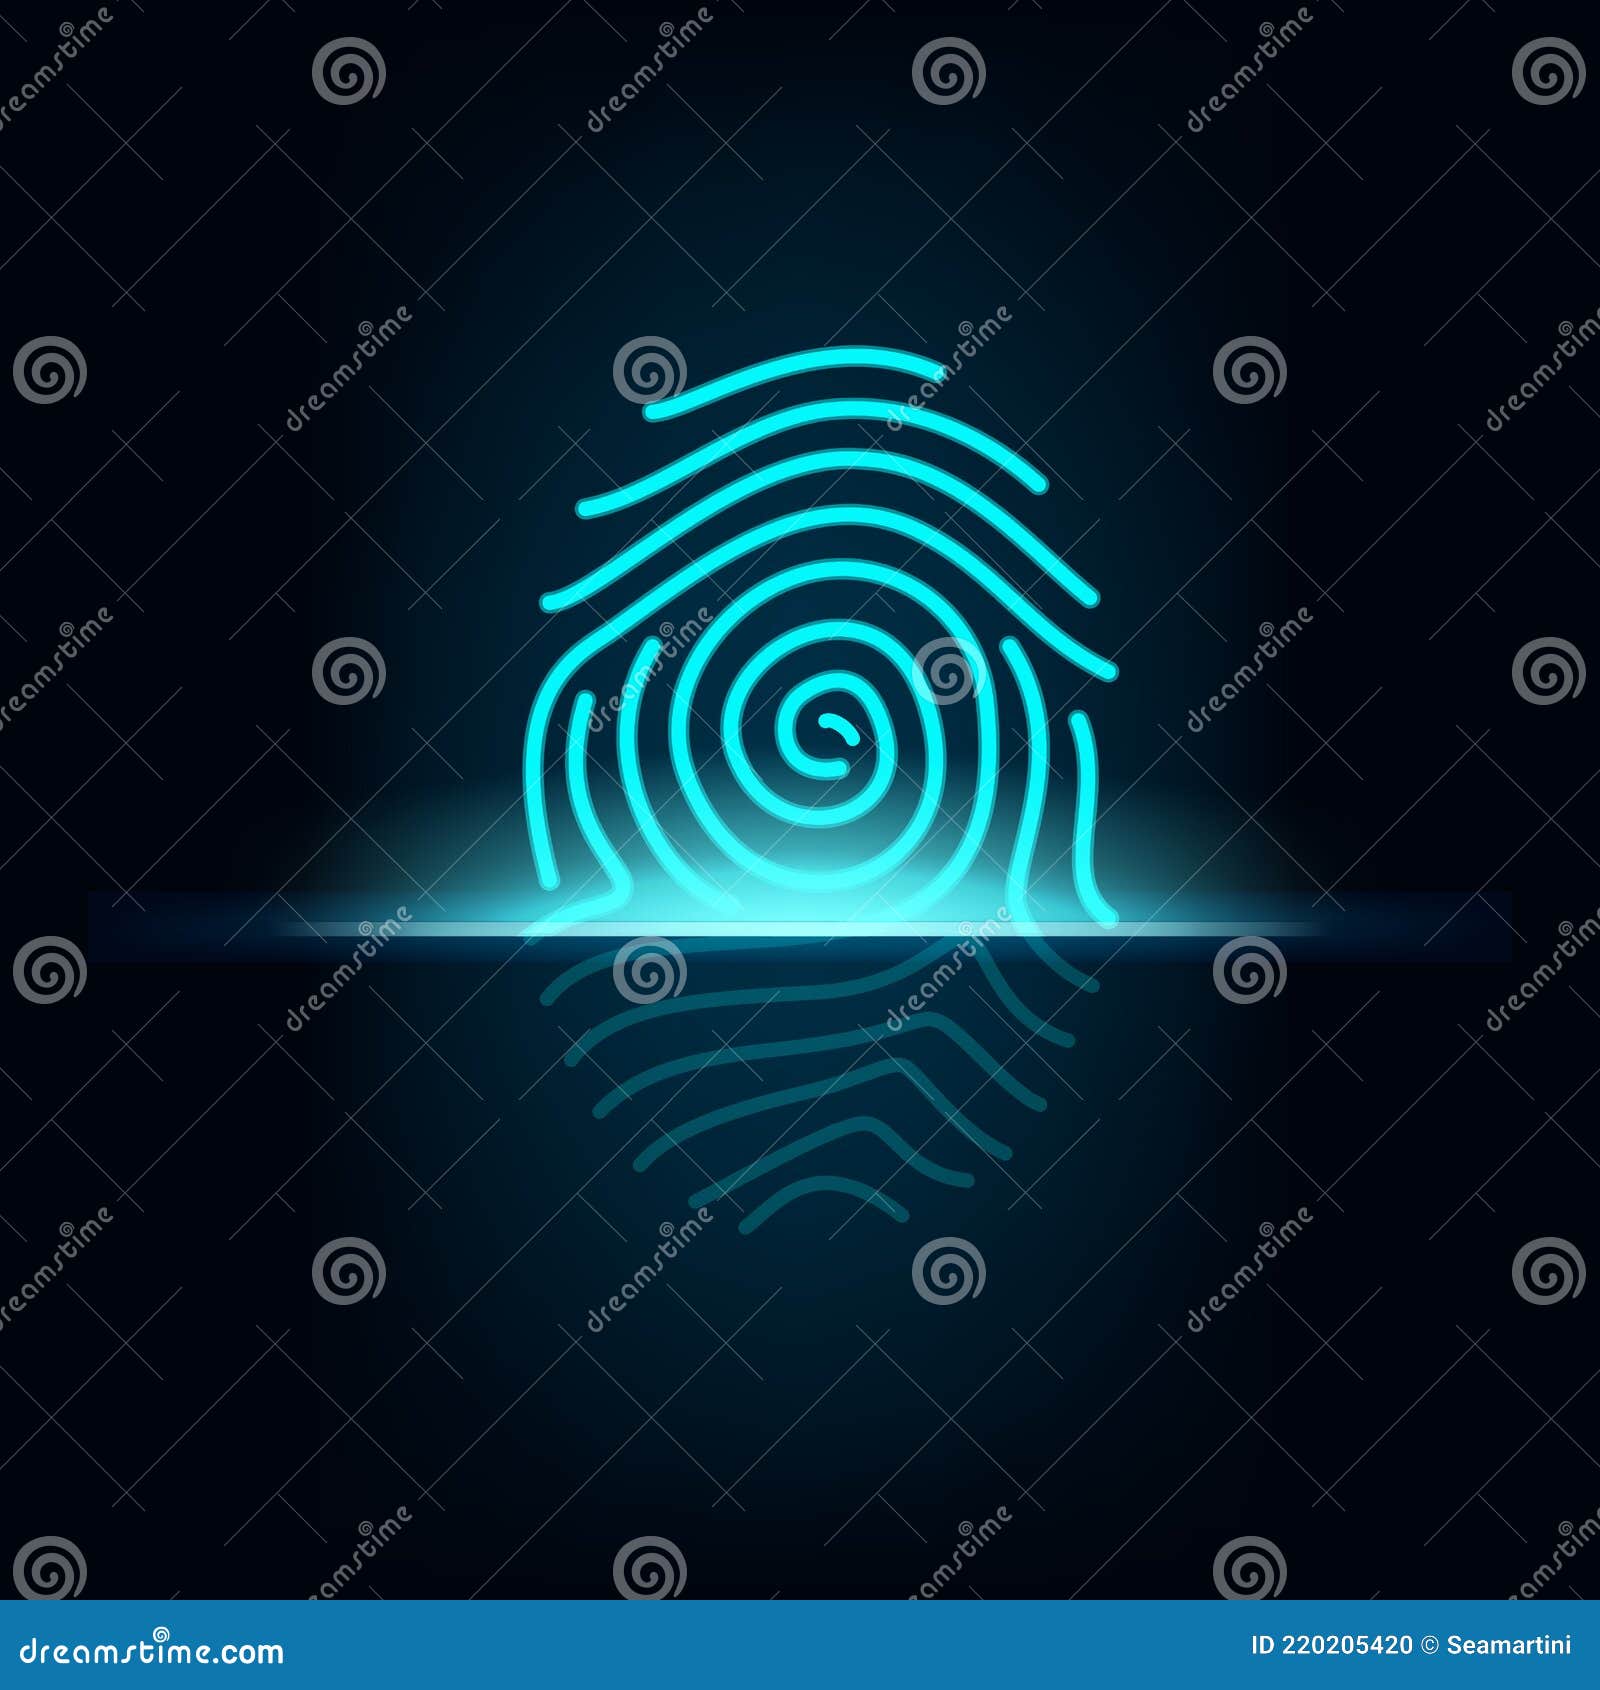 HD fingerprint lock wallpapers | Peakpx